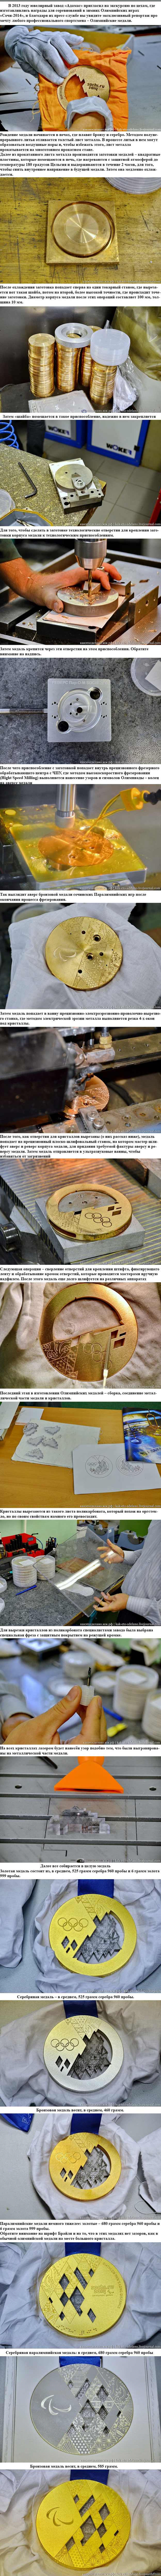     2014      http://dlyakota.ru/33783-kak-delayut-medali-dlya-olimpiyskih-igr-v-sochi.html